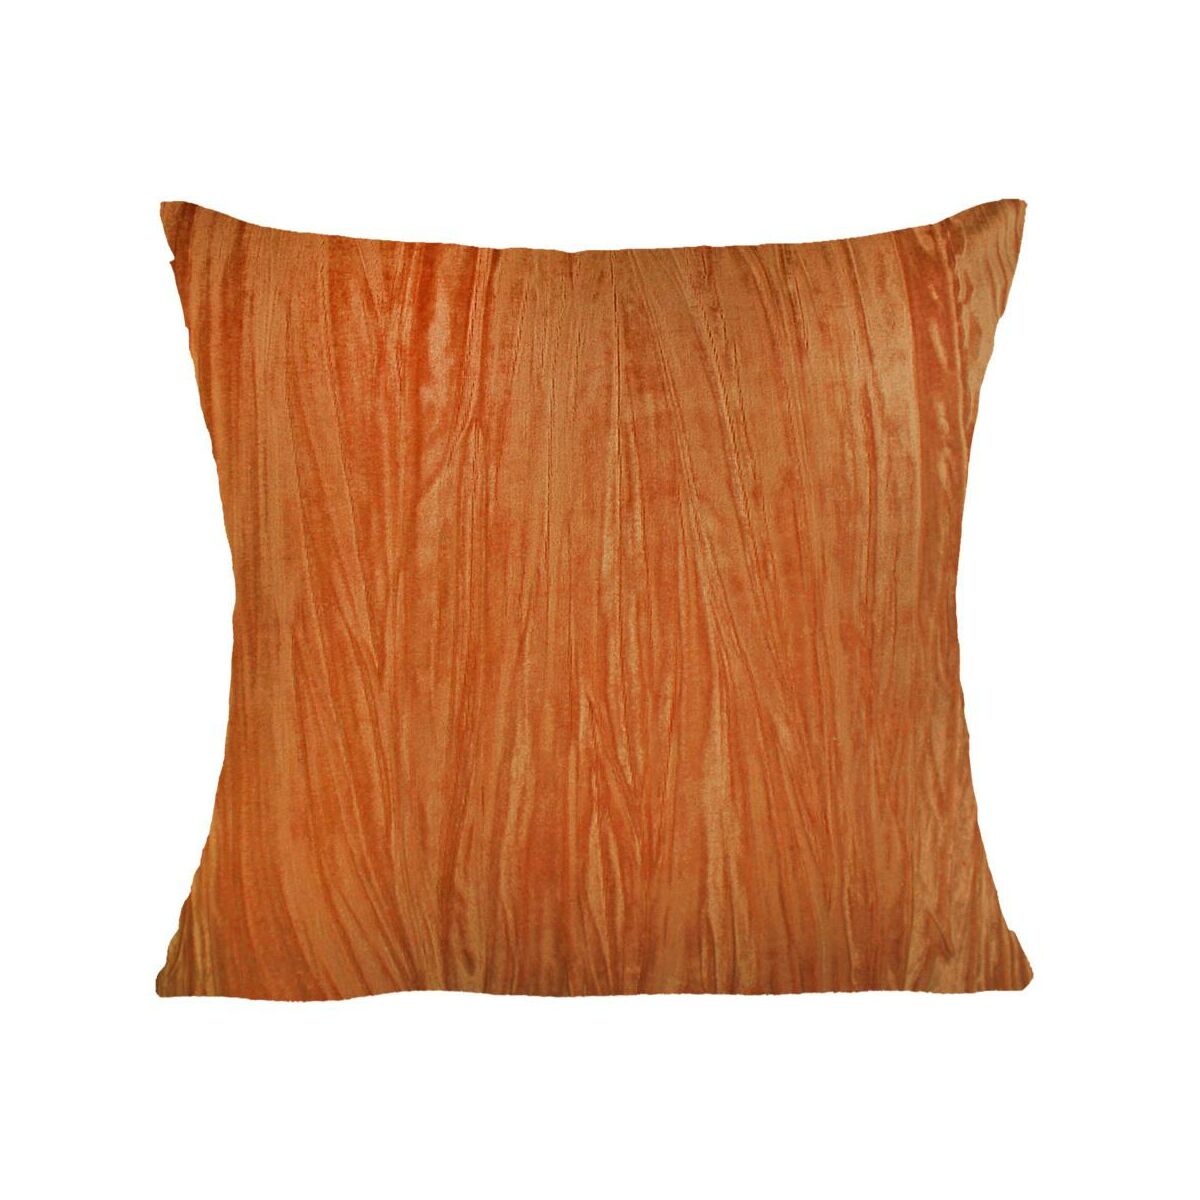 Poduszka Style pomarańczowa 45 x 45 cm